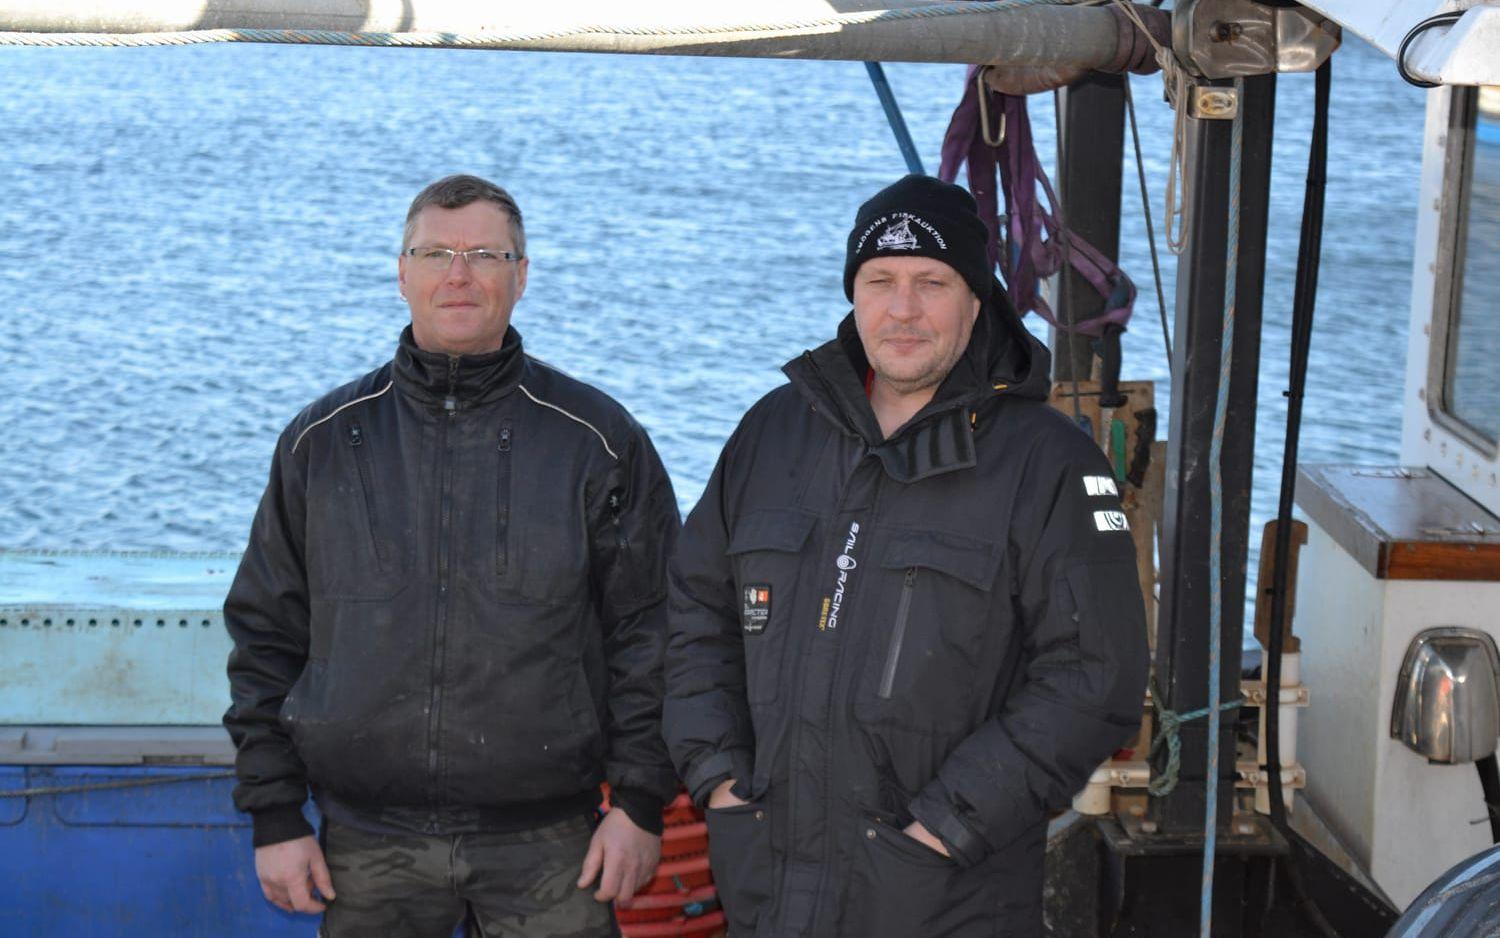 Med rätt fiska totalt 897 kg torsk och 918 kg havskräfta, går det inte att försörja sig och bröderna Berndtzen hoppas myndigheterna kan rädda dem. Foto: Ulf Blomgren